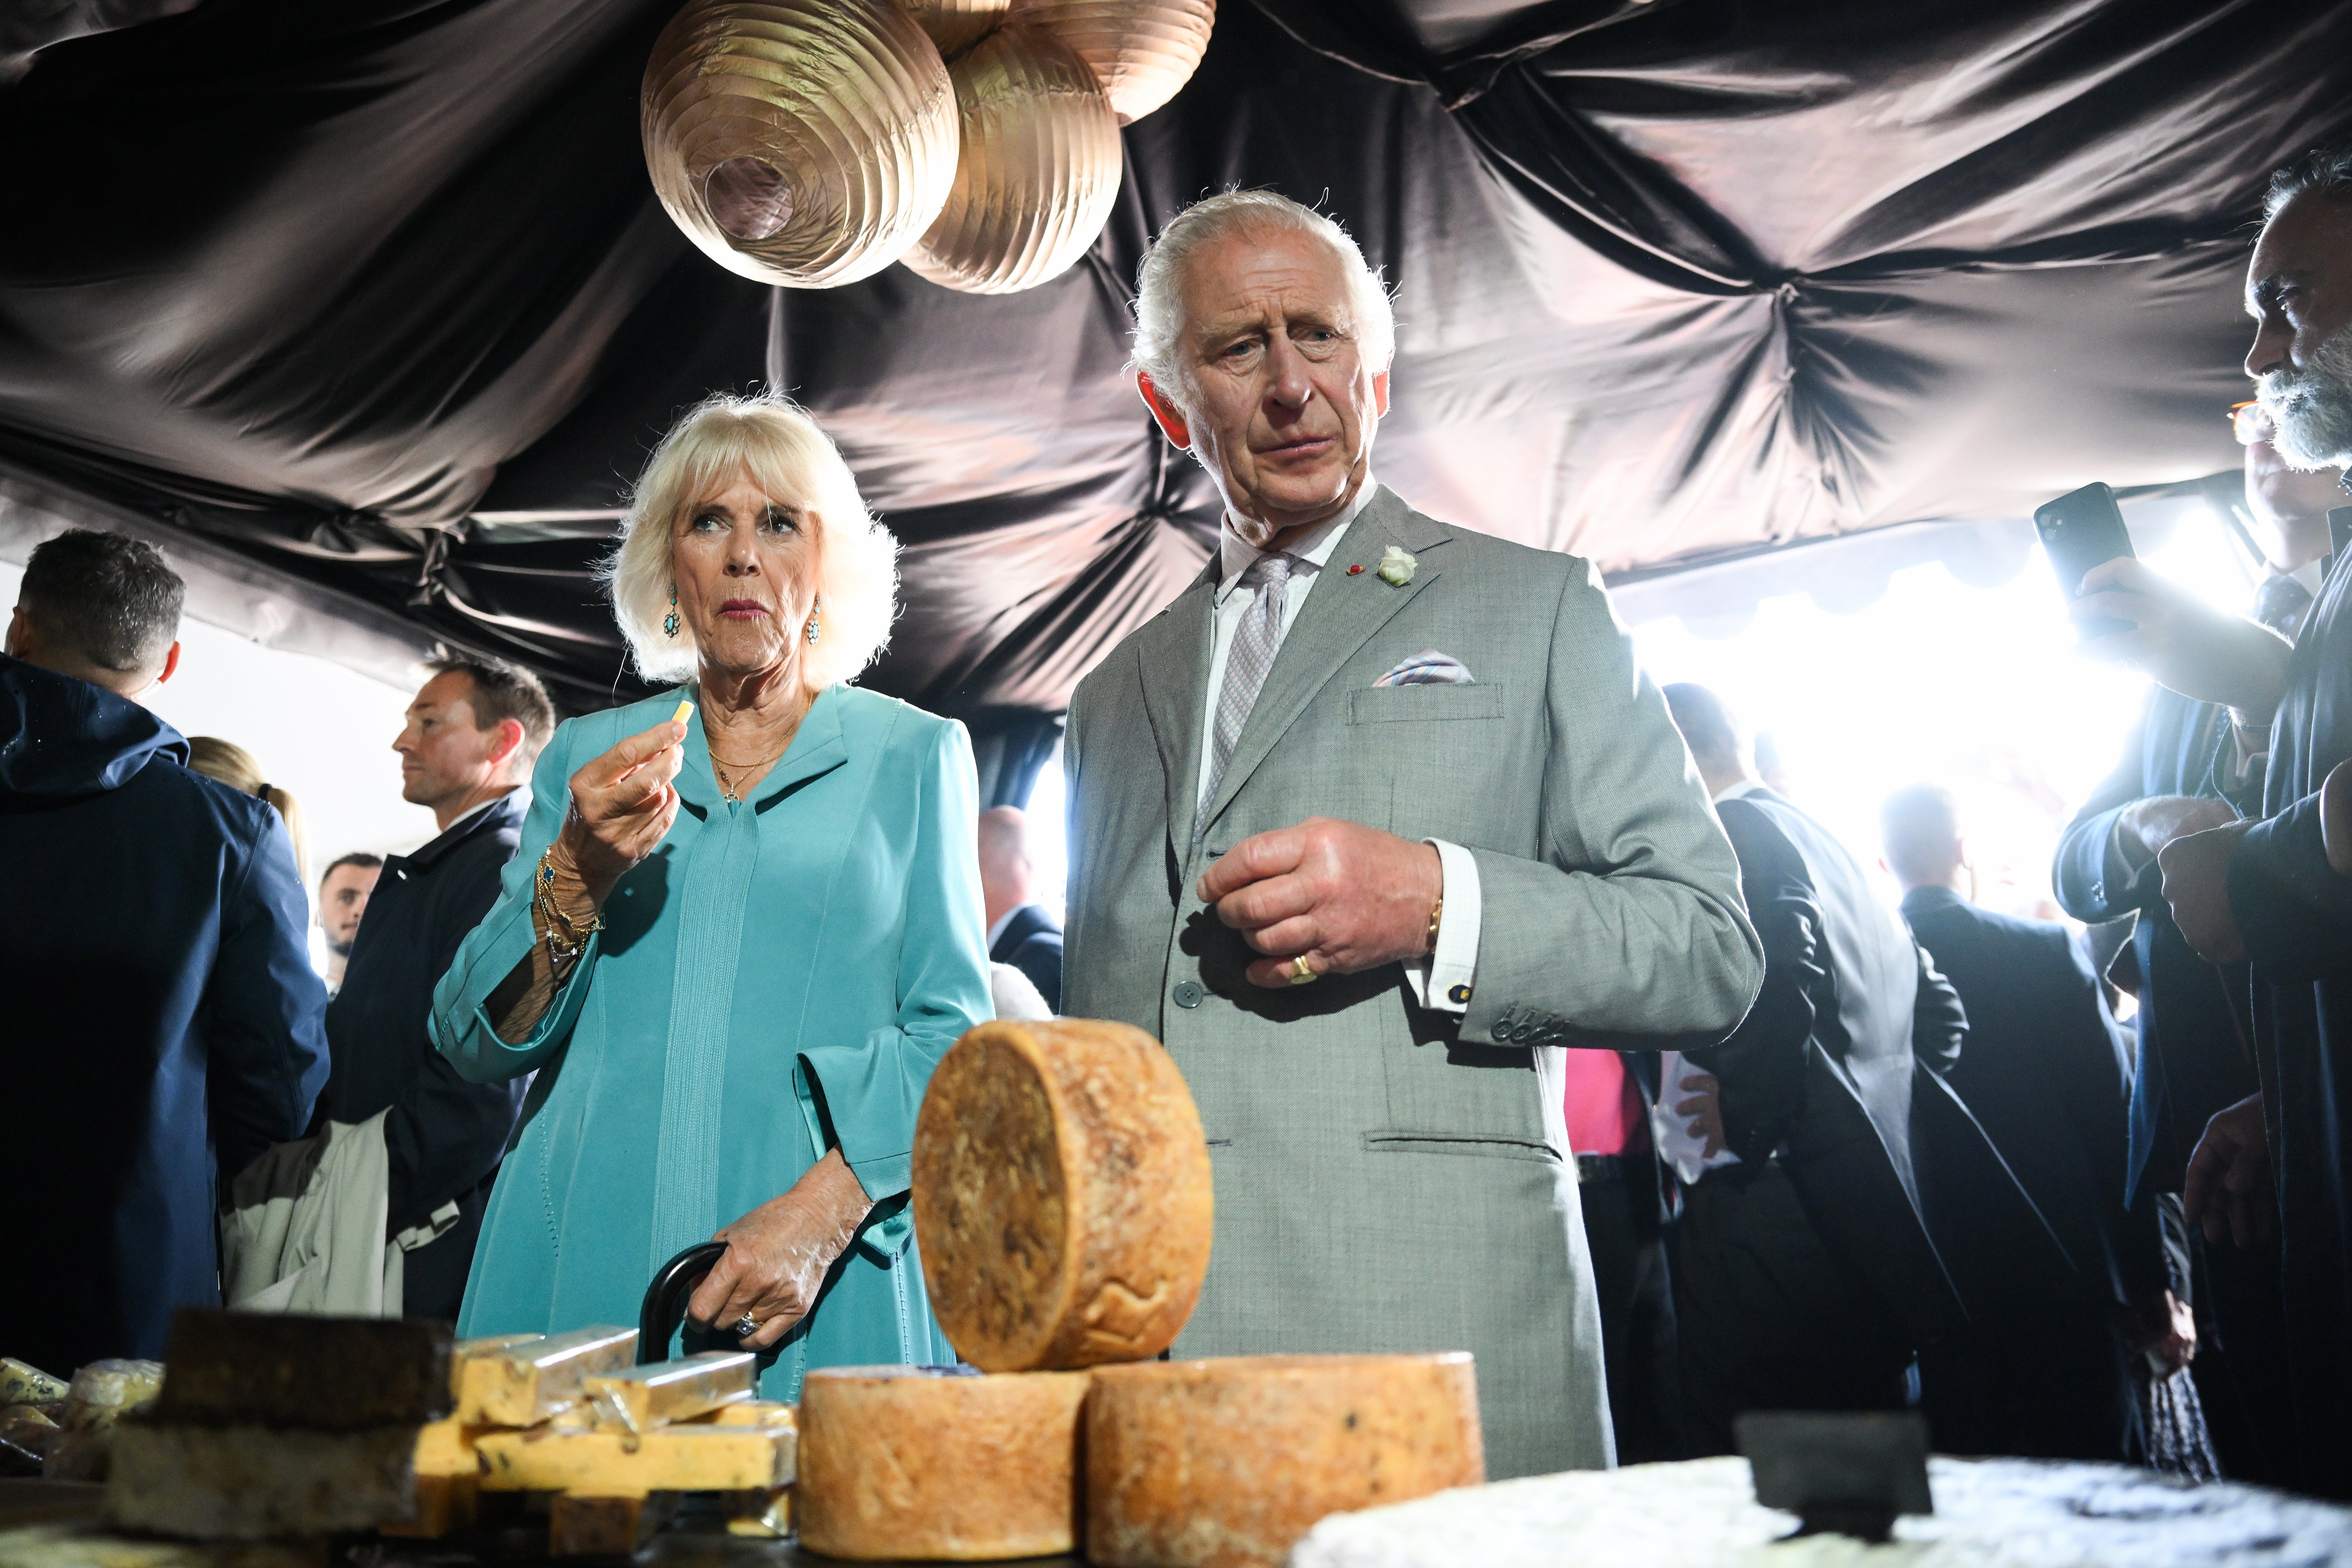 Los reyes participan en una degustación de quesos en un festival con productos locales británicos y franceses